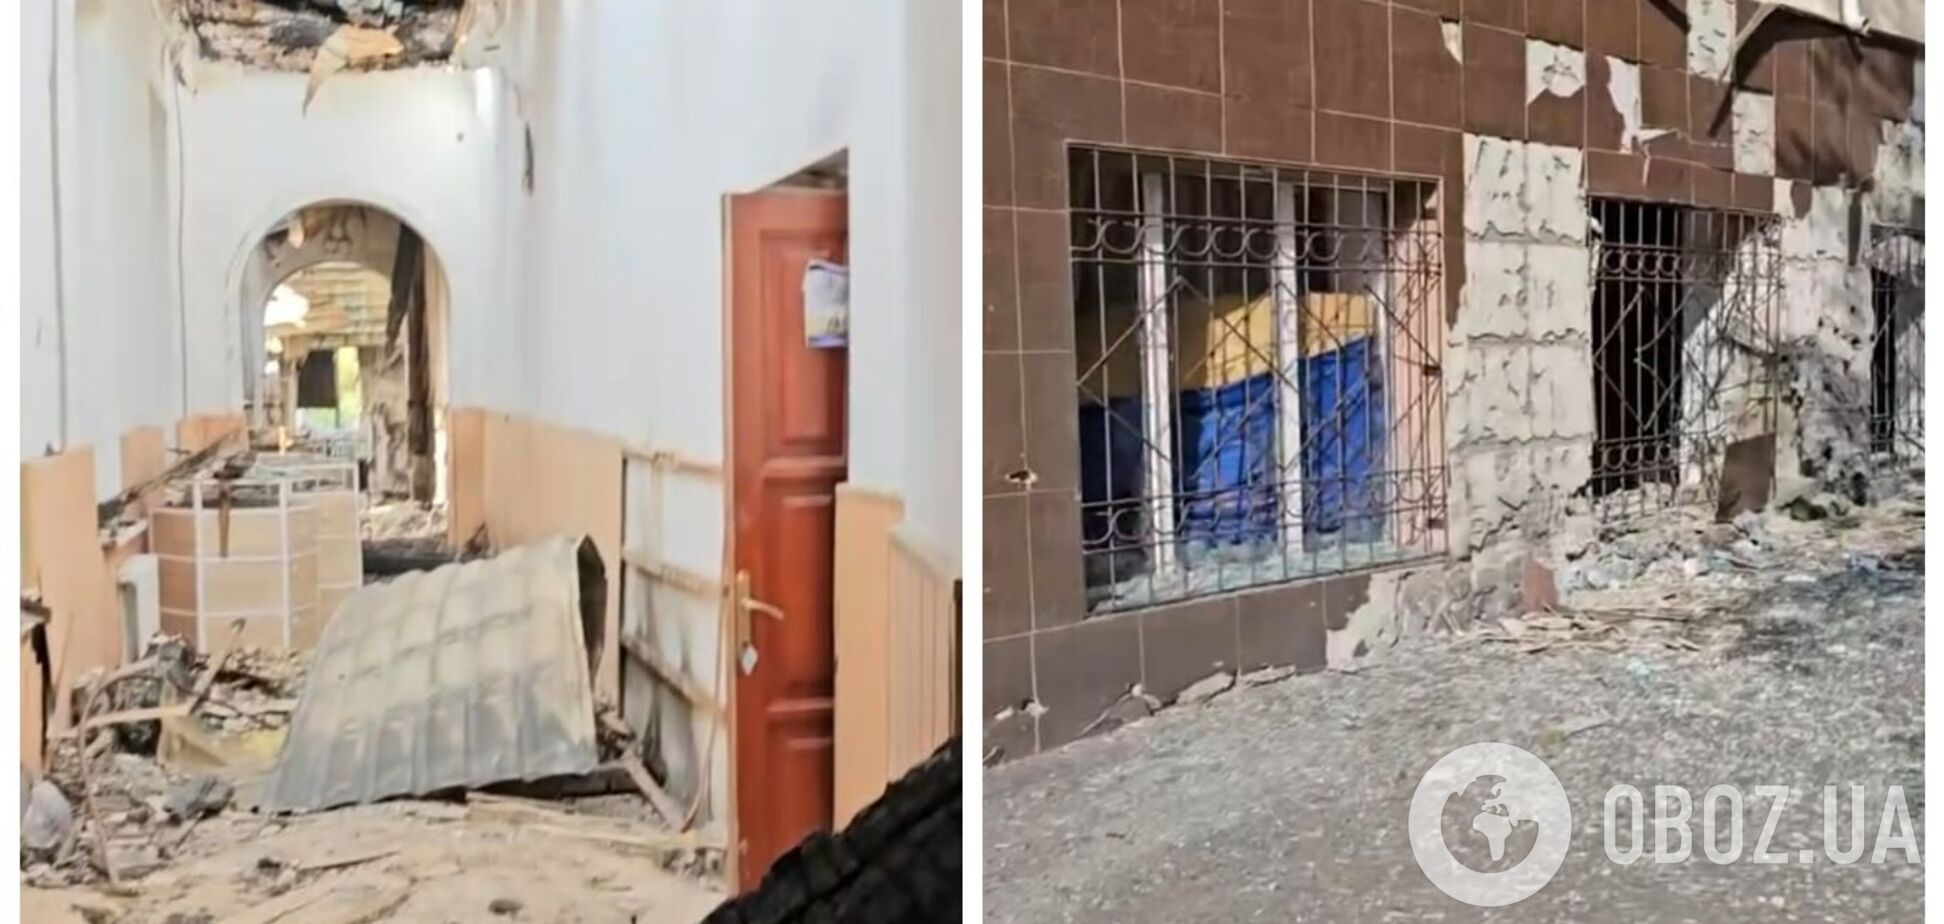 'Демилитаризовали' парты и стены: оккупанты попали в гимназию в Херсоне. Видео